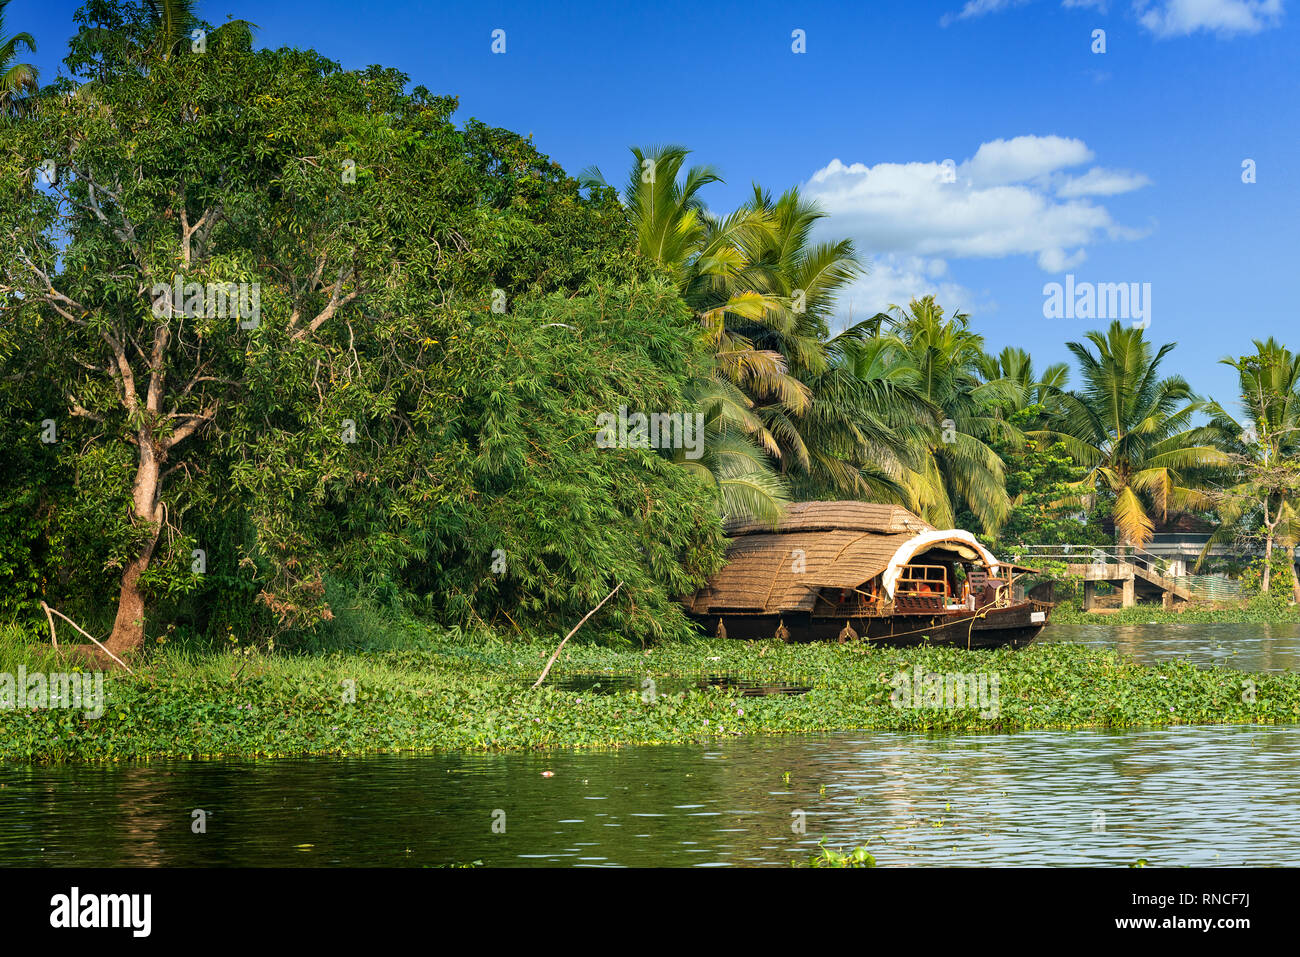 Una casa tradizionale barca è ancorata sulle rive di un lago per la pesca sportiva in Kerala la lagune, India. - Immagine Foto Stock